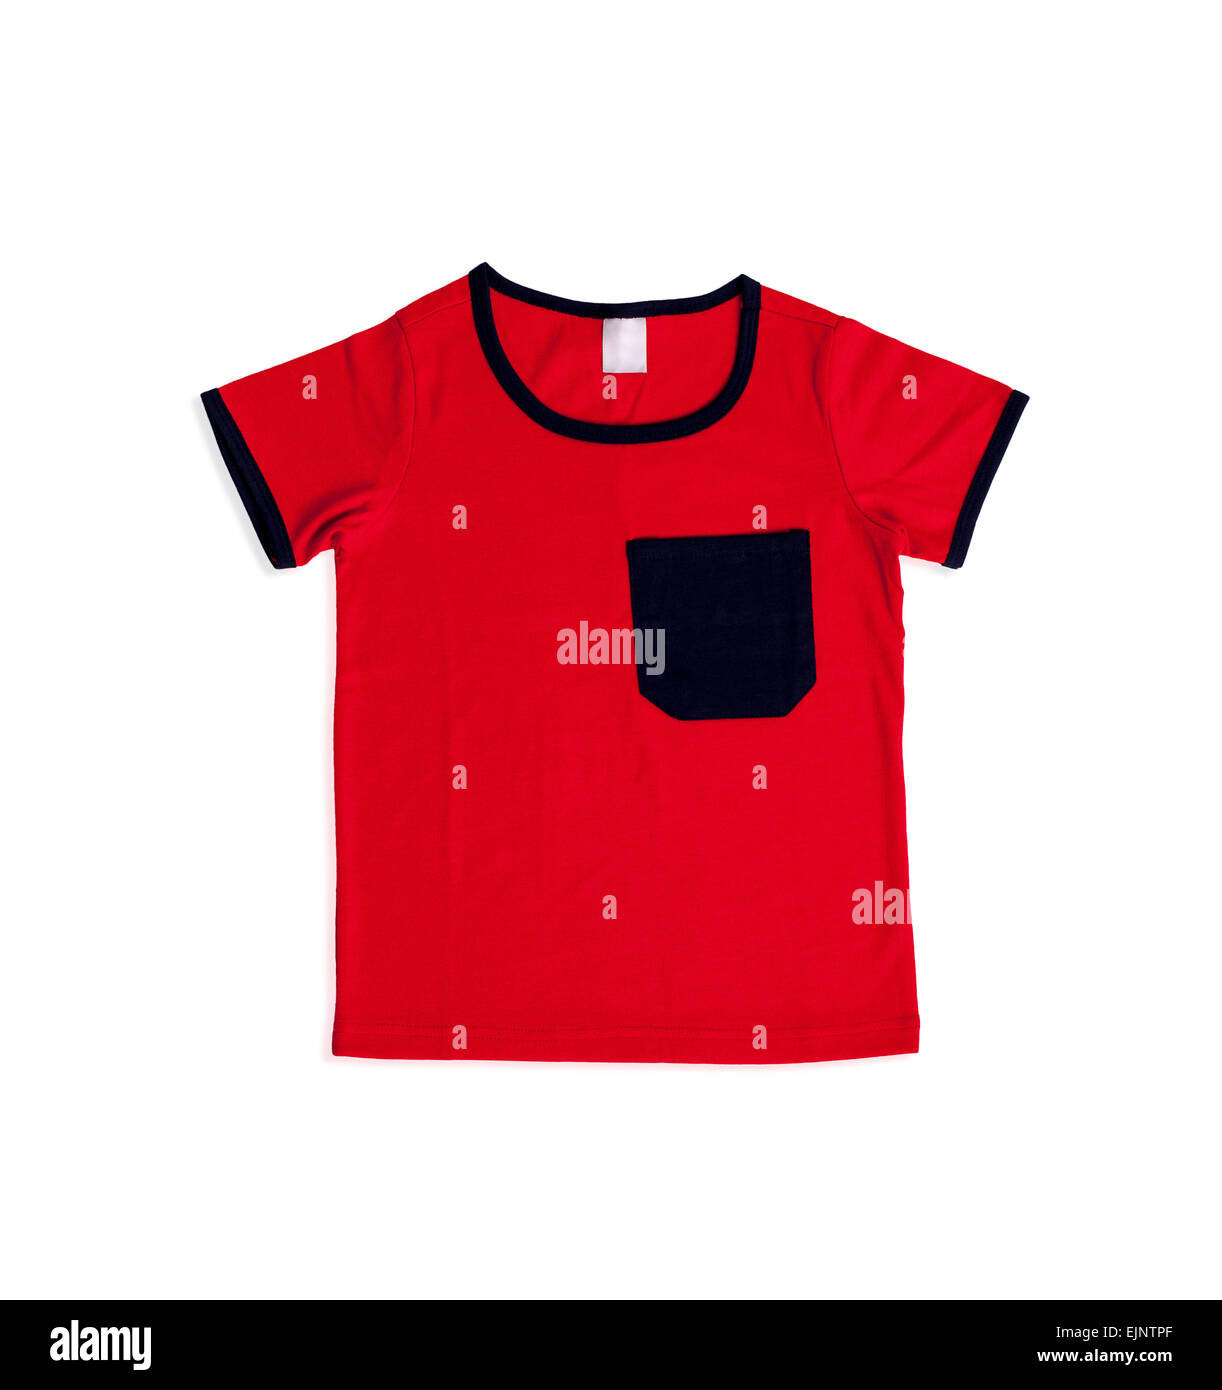 Bébé garçon rouge t-shirt isolé sur fond blanc Banque D'Images